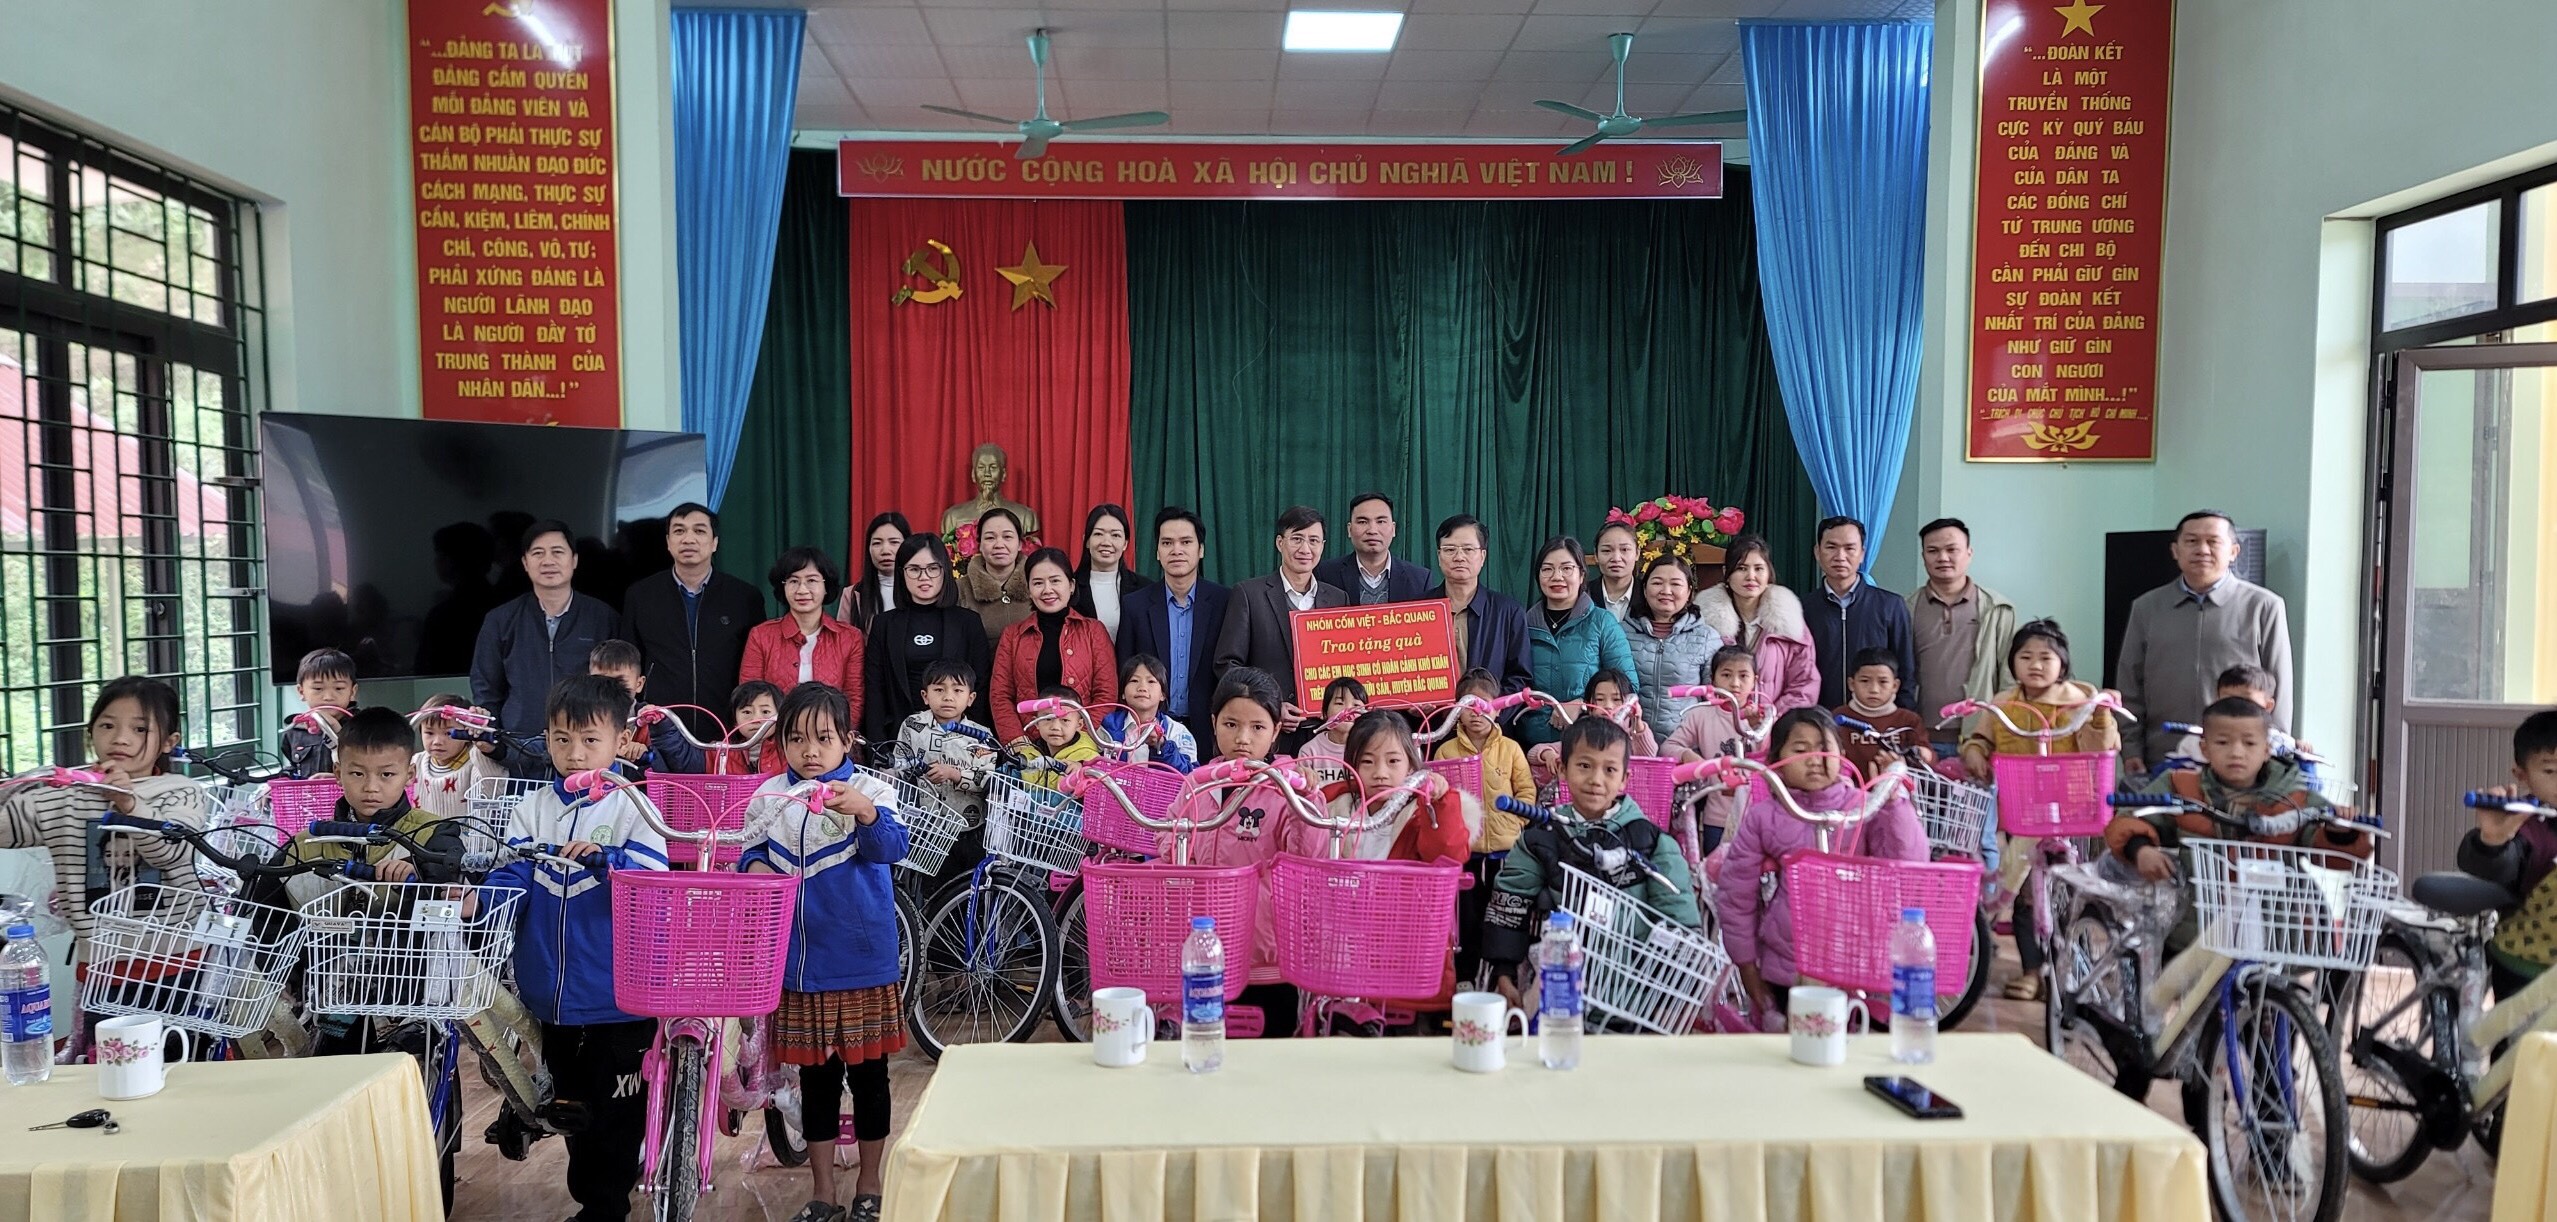 Đồng chí Trần Quang Minh, Chủ nhiệm UBKT Tỉnh ủy cùng Nhóm thiện nguyện “Cốm Việt”  trao quà “tiếp sức đến trường” cho học sinh nghèo xã Hữu Sản